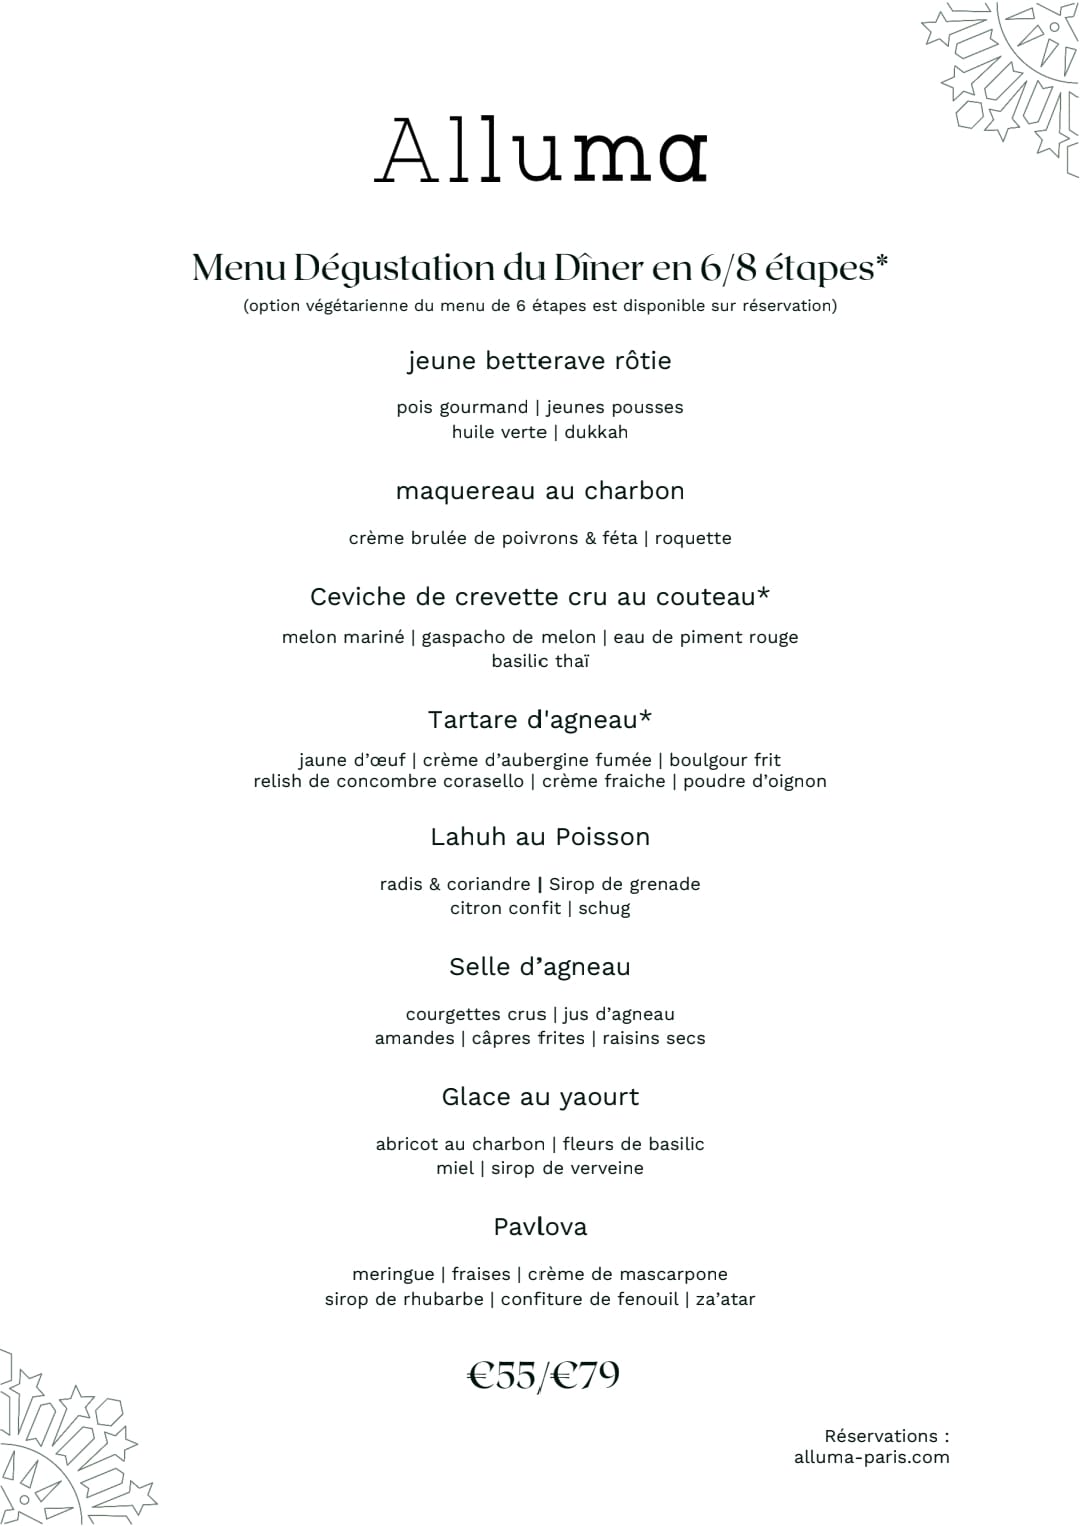 Alluma Restaurant Paris menu dégustation bistronomique diner